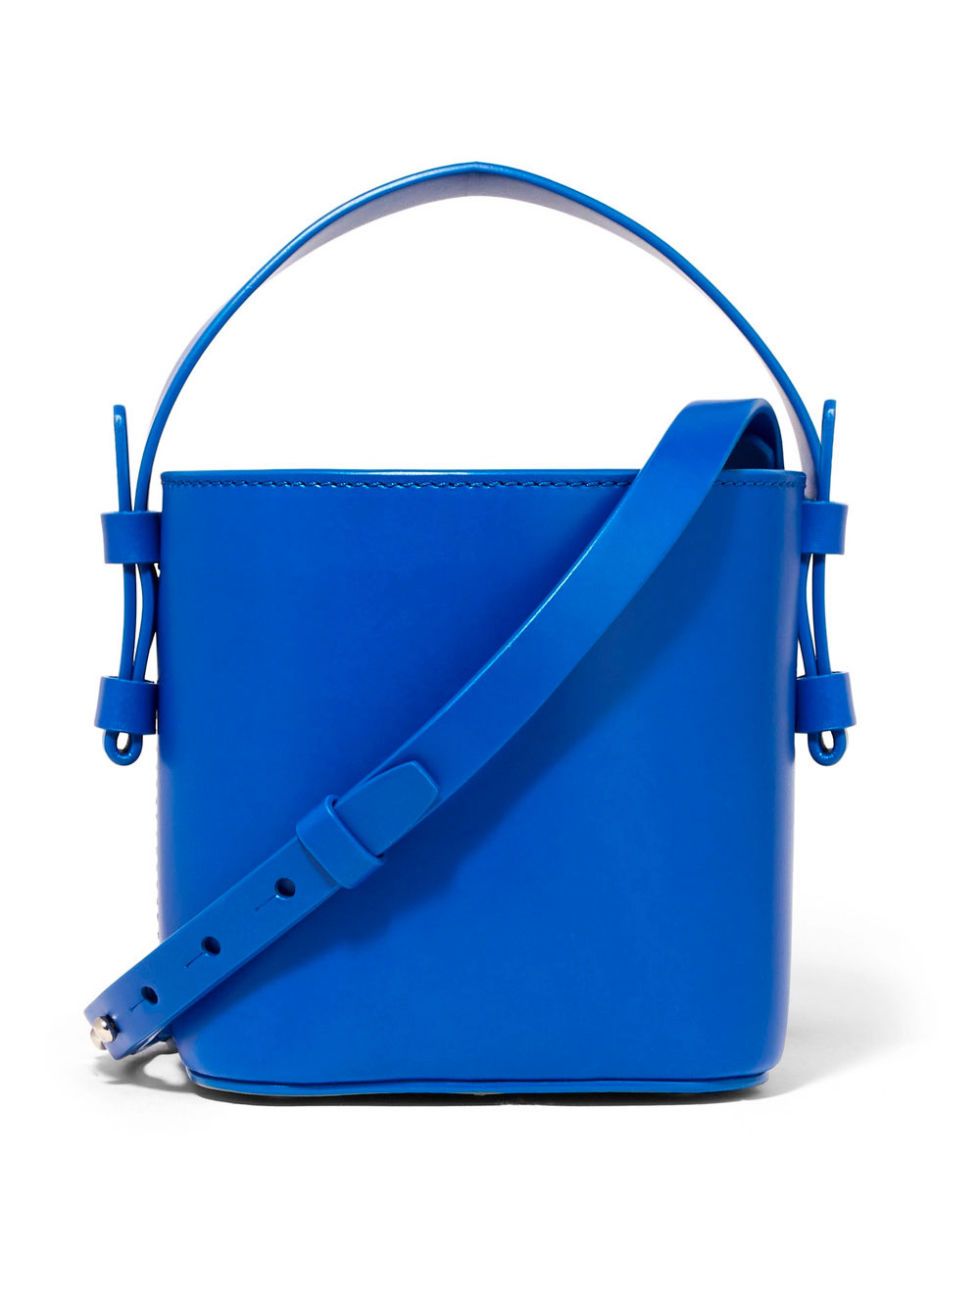 Bag, Blue, Cobalt blue, Handbag, Electric blue, Azure, Product, Fashion accessory, Shoulder bag, Leather, 